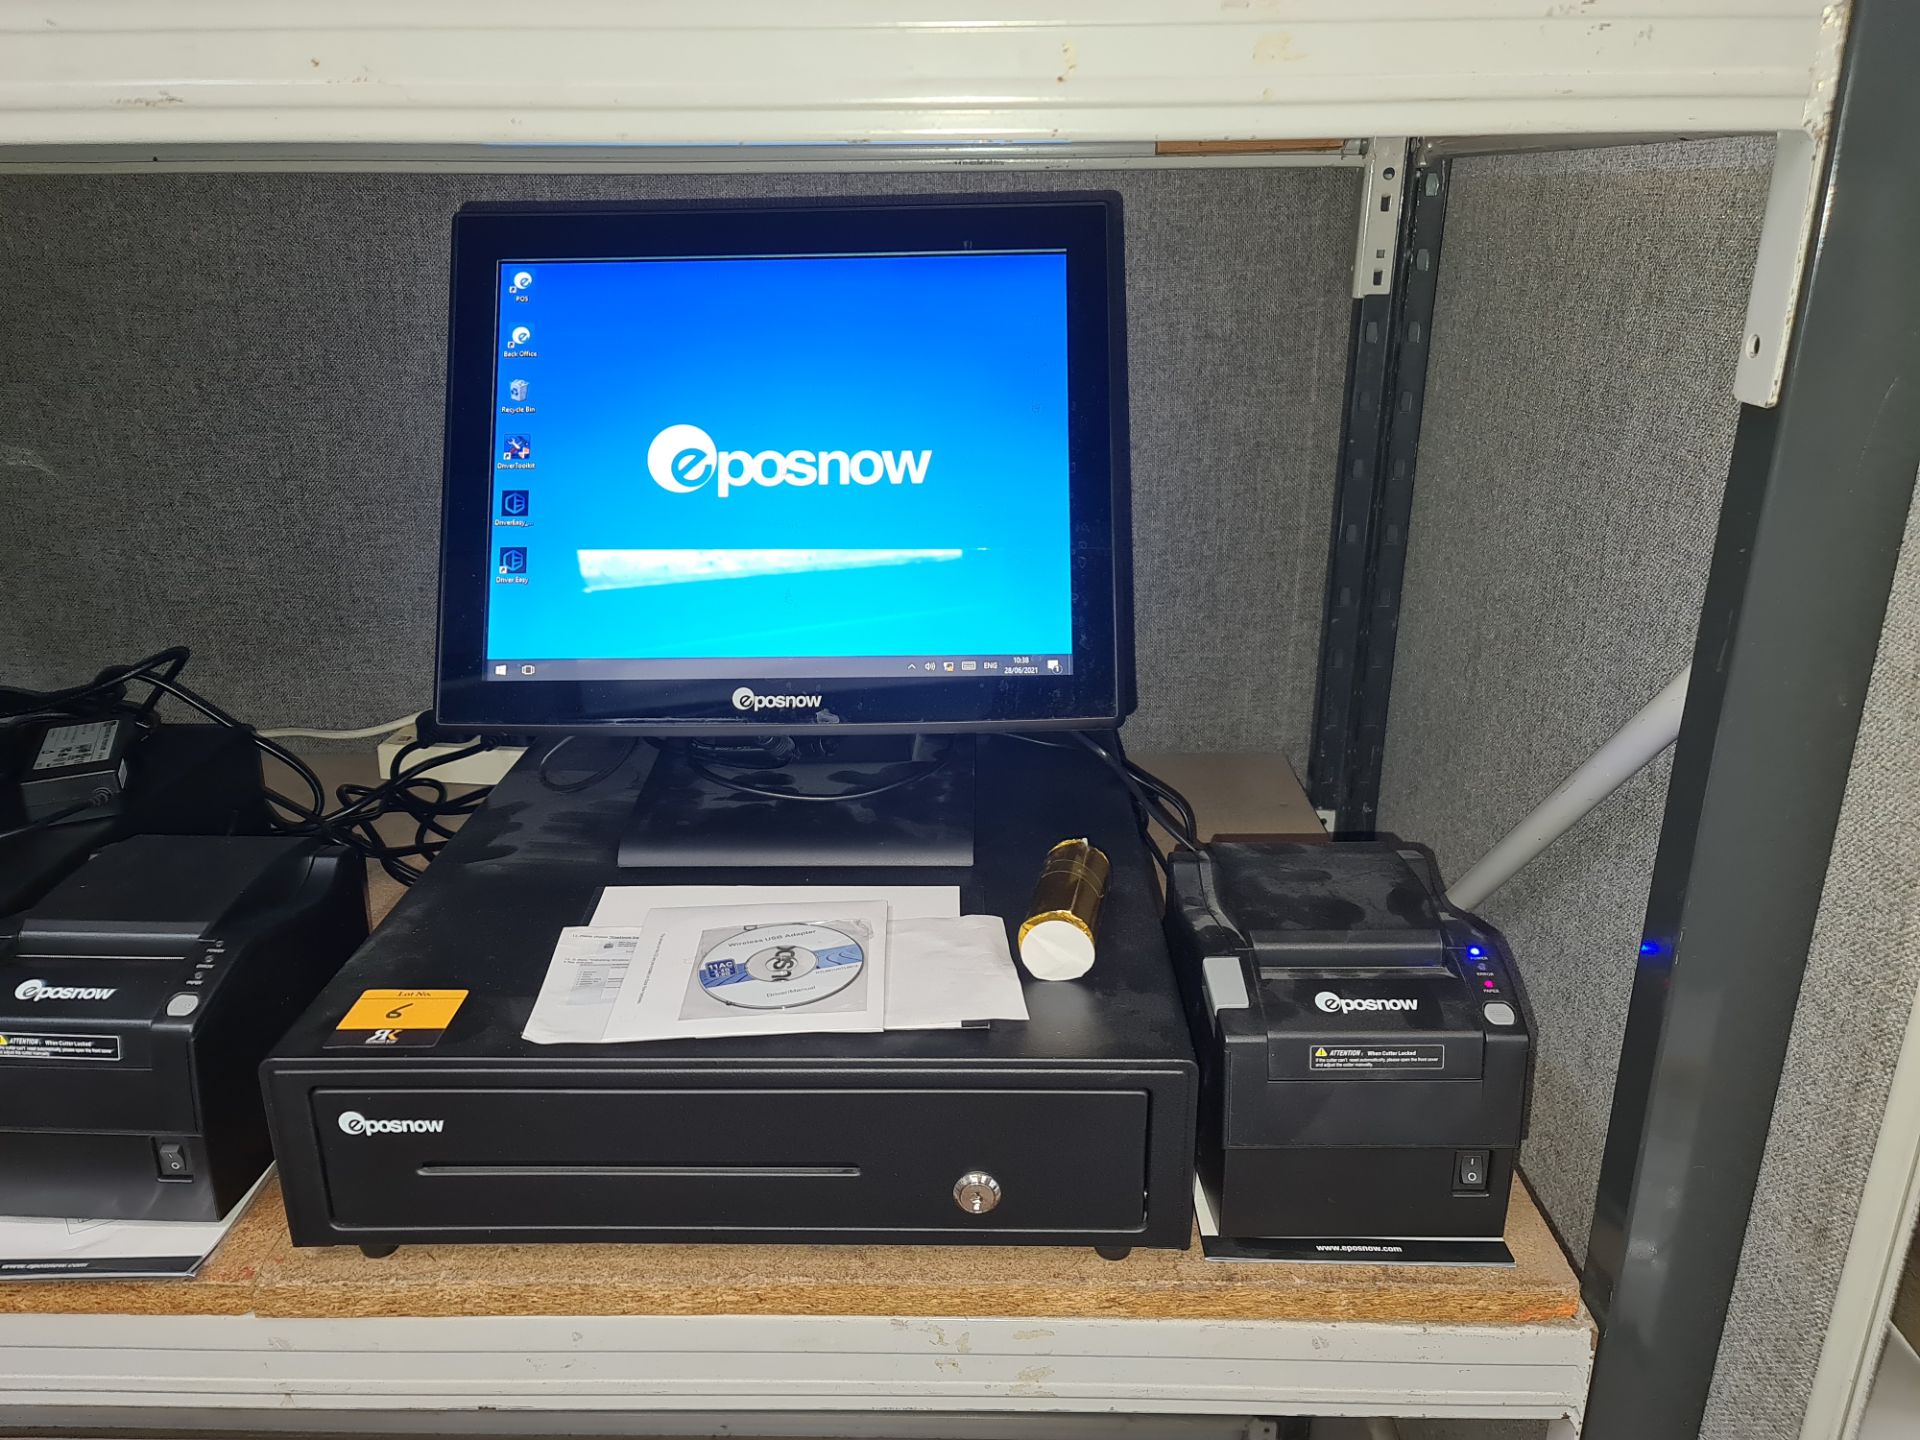 EPOSNOW touchscreen EPOS terminal plus cash drawer & EPOSNOW receipt printer. This lot is being sold